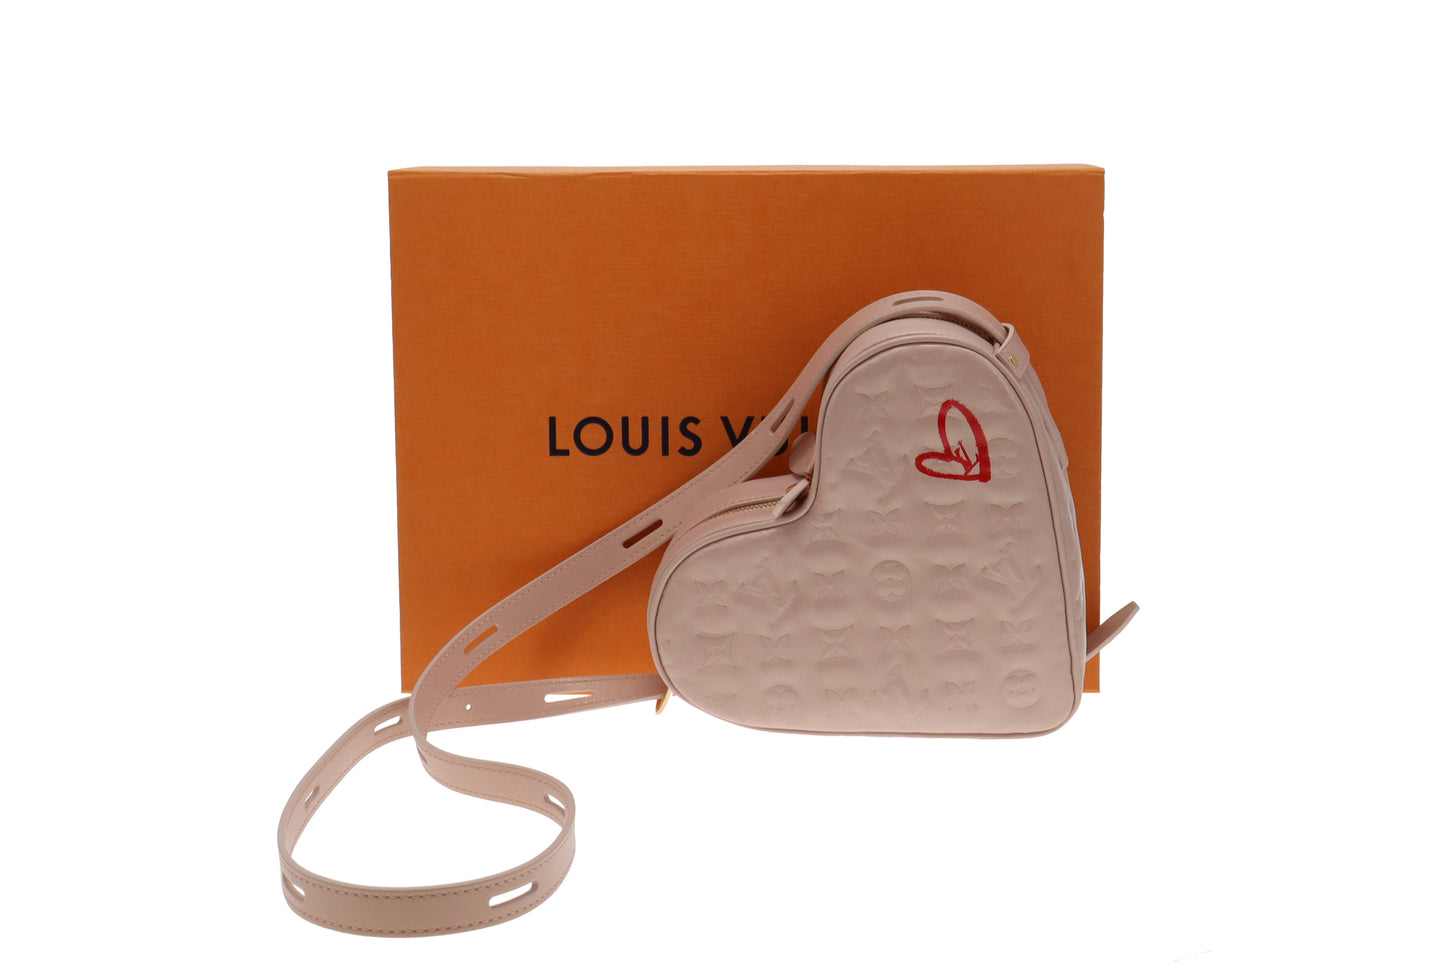 Louis Vuitton 2021 Monogram Empreinte Fall in Love Sac Coeur